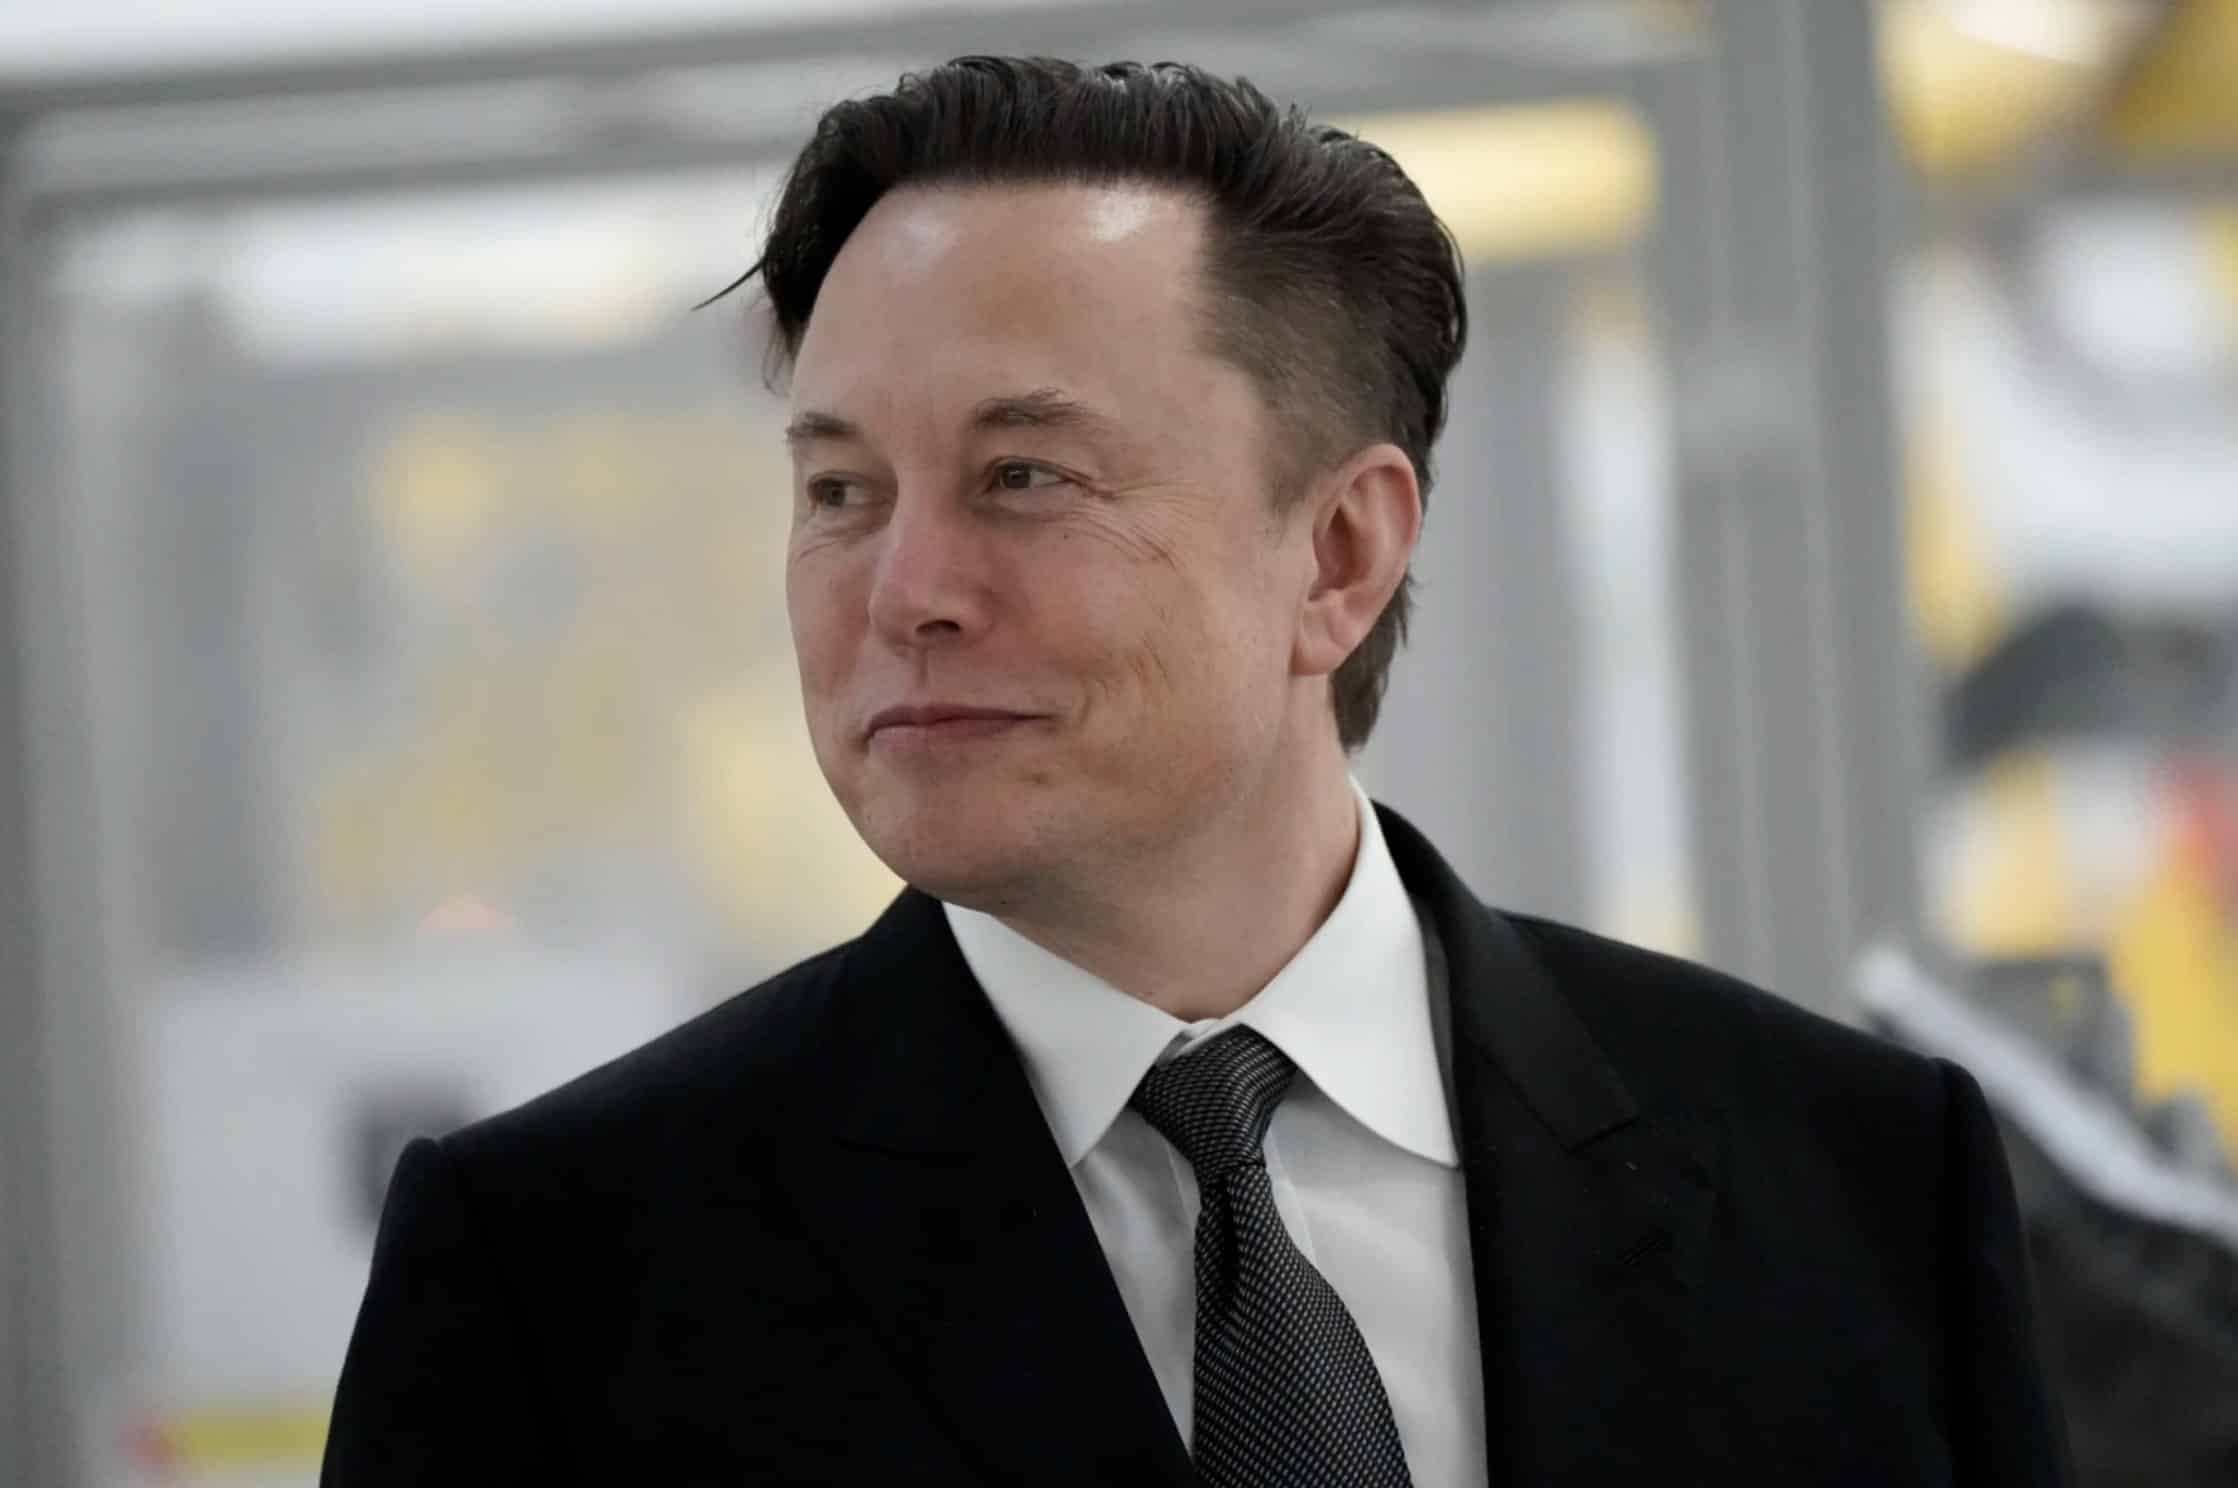 Elon Musk volta a ser o homem mais rico do mundo com fortuna de R$ 1 trilhão - Descubra como ele alcançou este feito histórico